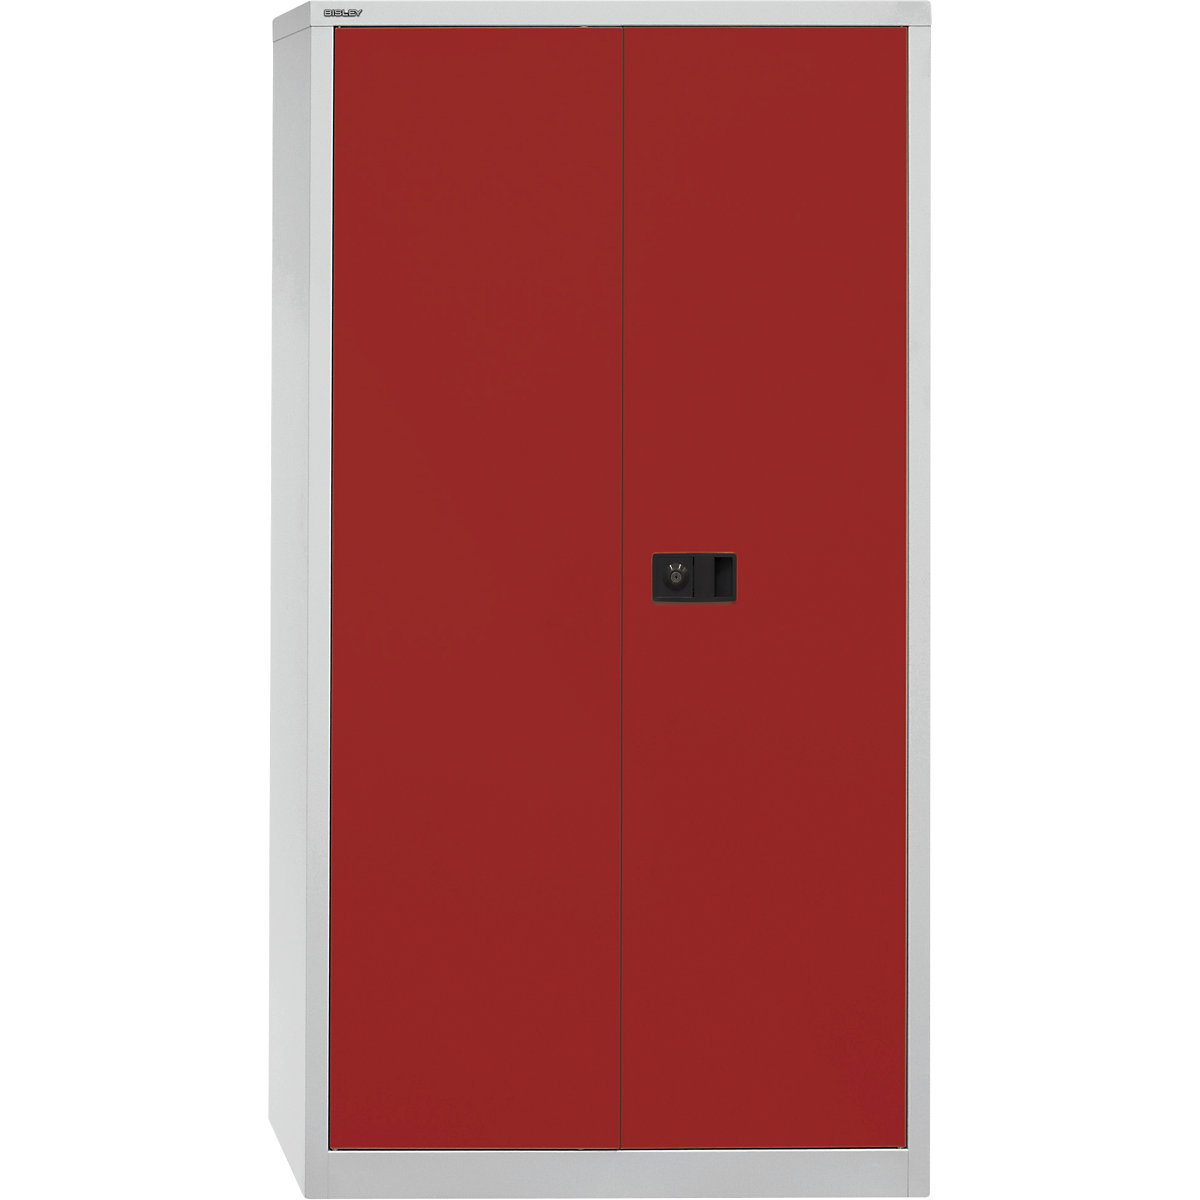 Dulap cu uși batante UNIVERSAL – BISLEY, î. x lăț. x ad. 1806 x 914 x 400 mm, 3 polițe, înălțime pentru 4 bibliorafturi, gri deschis / roșu cardinal-3